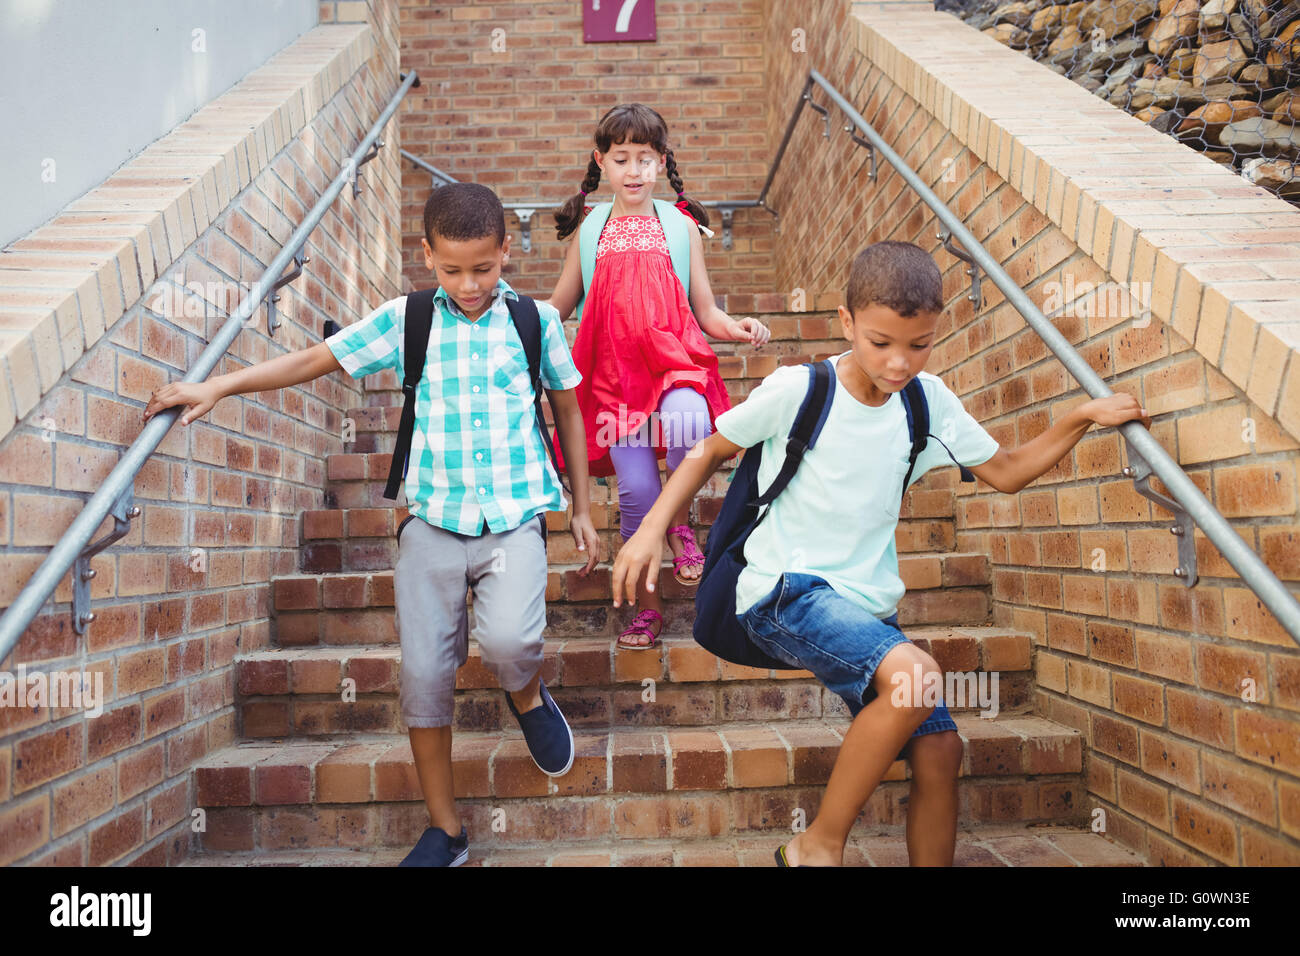 Los niños bajando la escalera Foto de stock